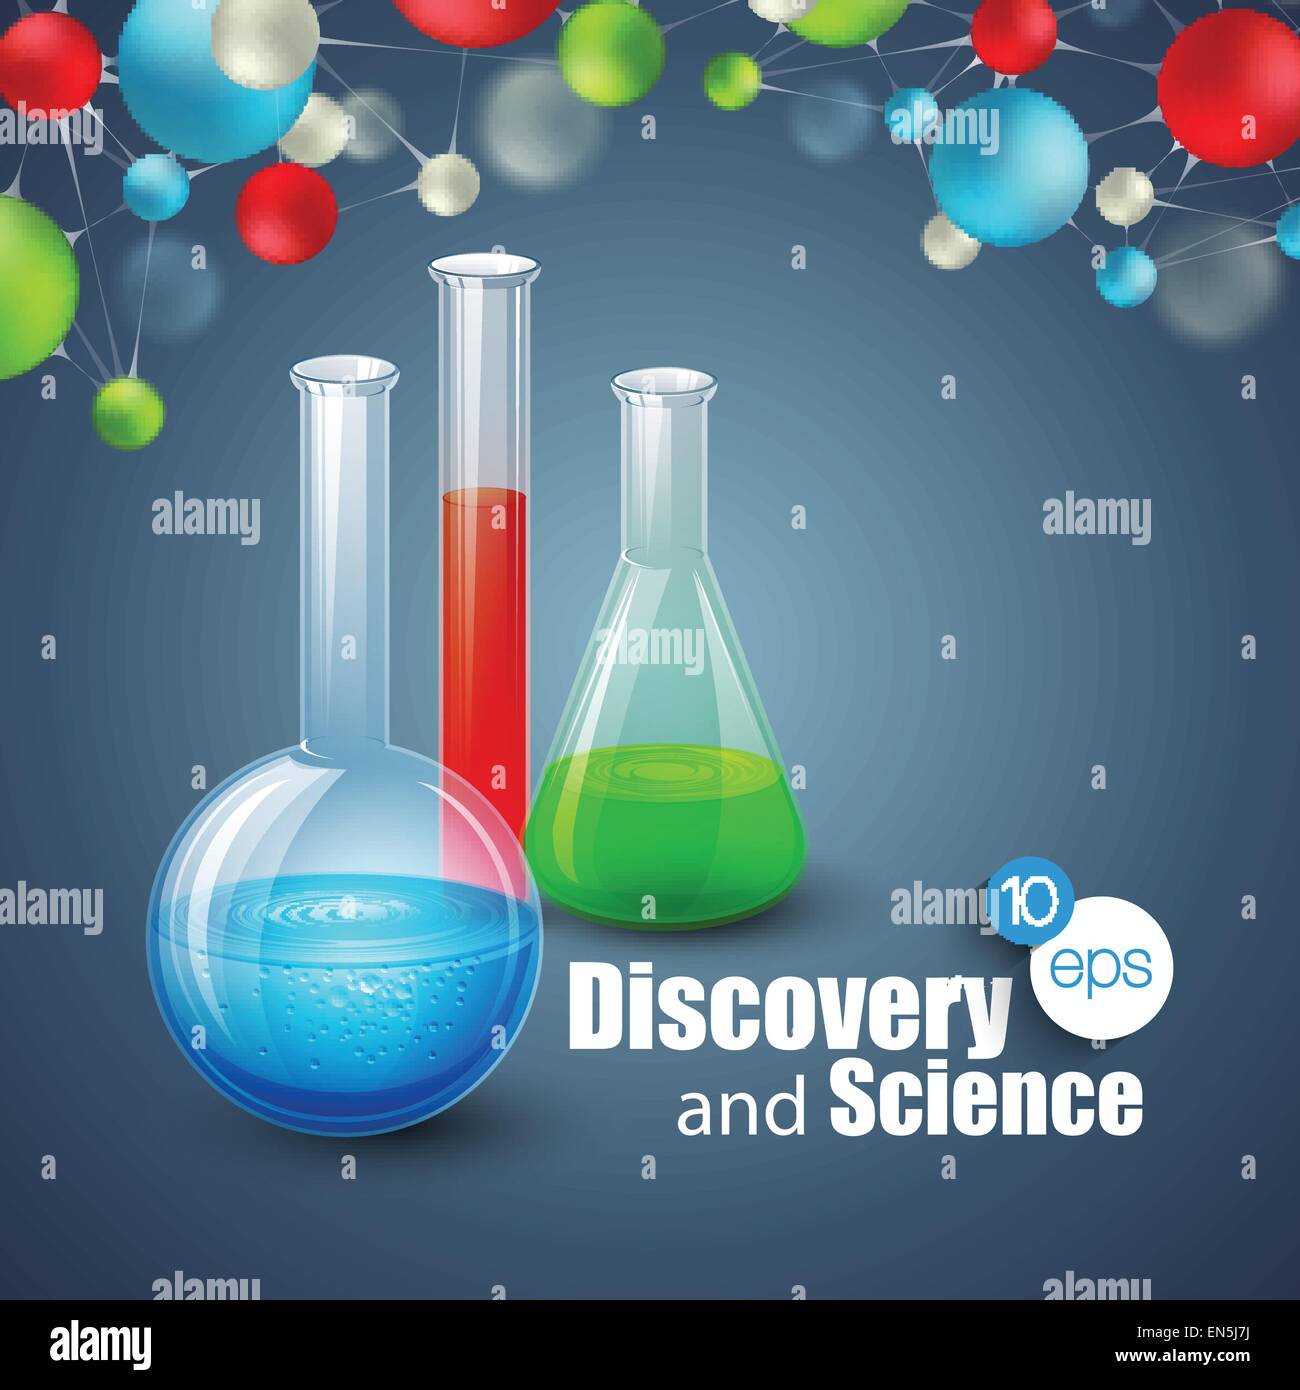 Chemische Wissenschaft und Entdeckung. Vektor-Illustration. Molekül und Fläschchen Stock Vektor